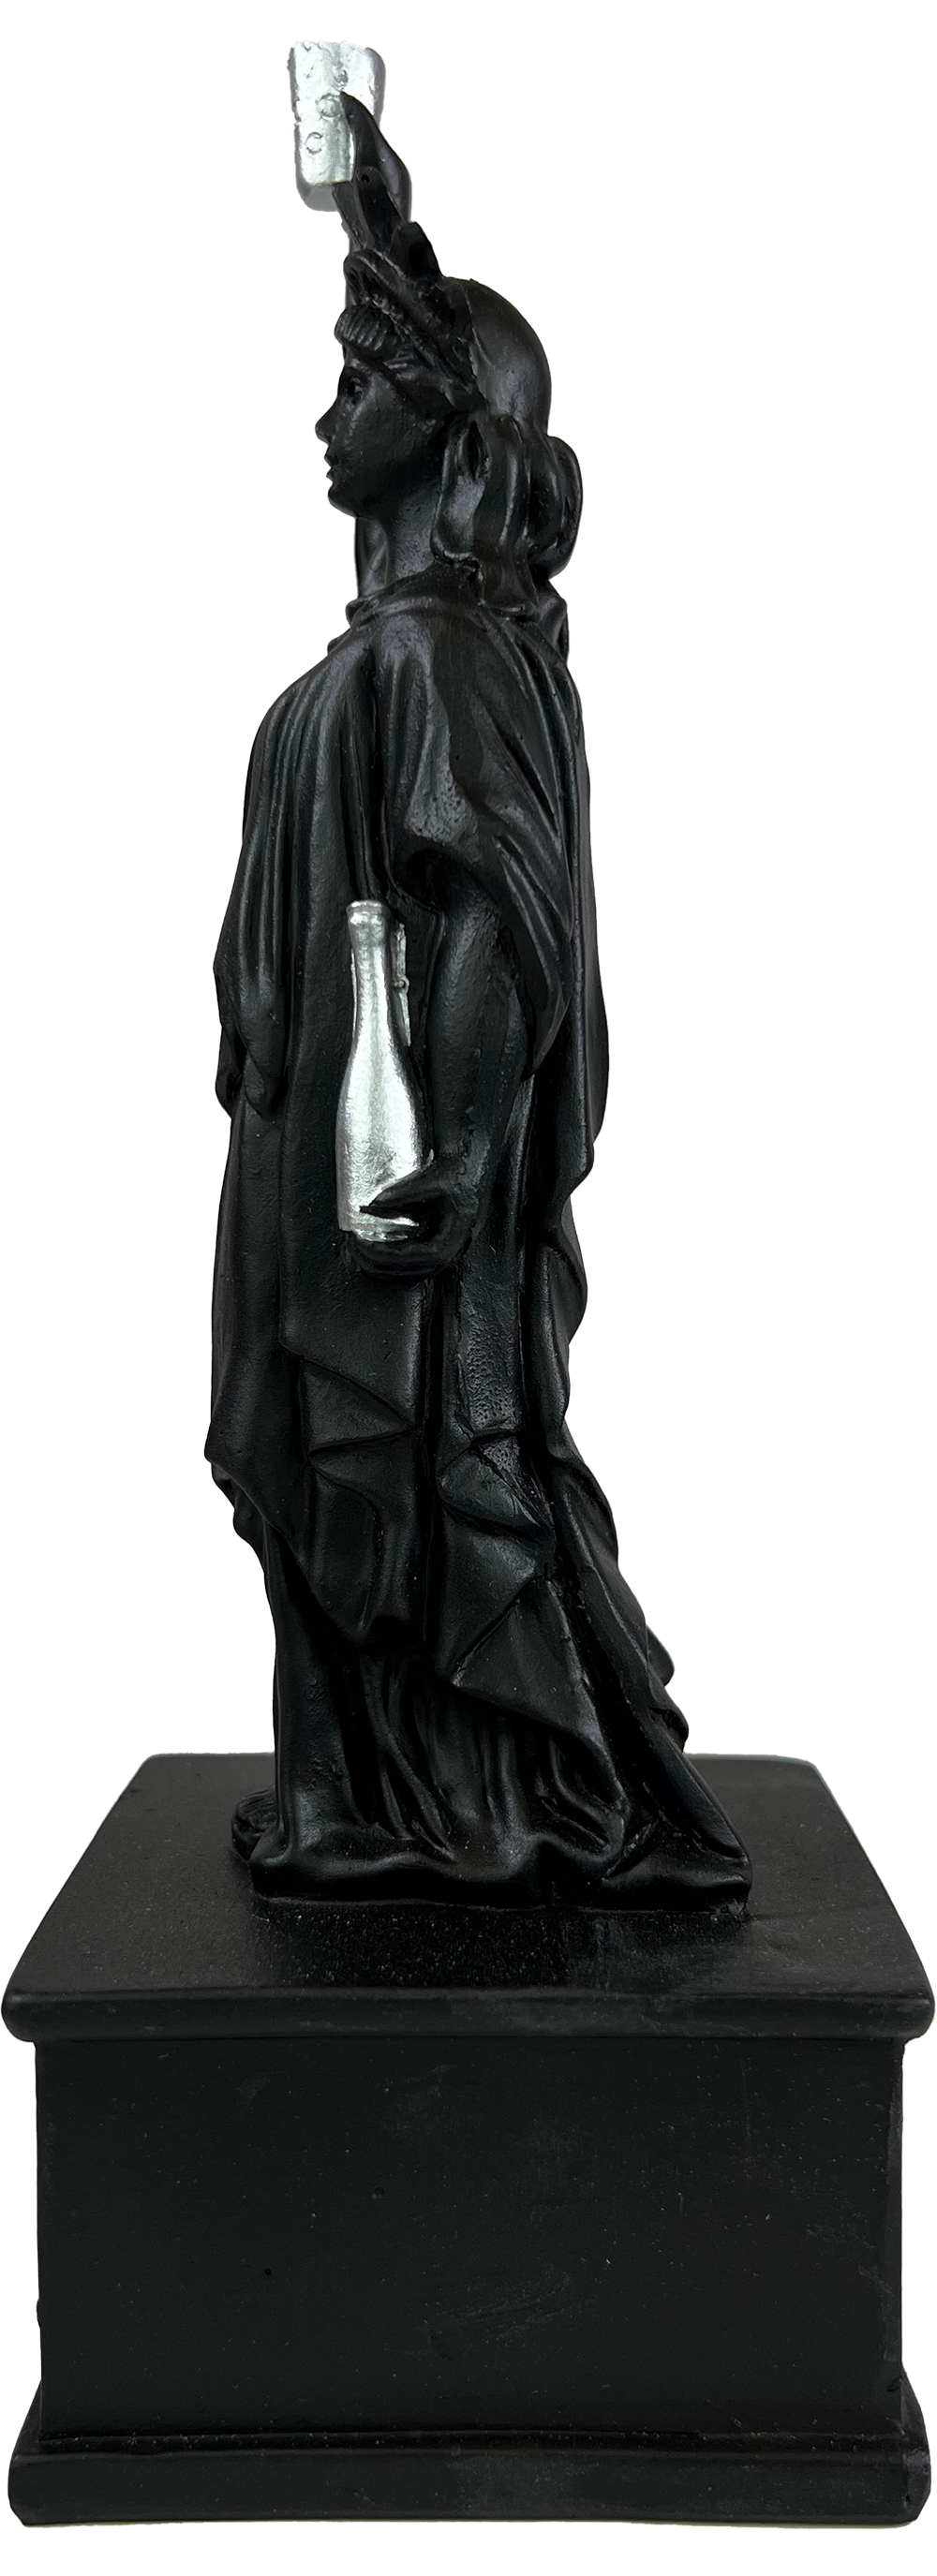 Pfälzer Freiheit Mini Statue (schwarz)